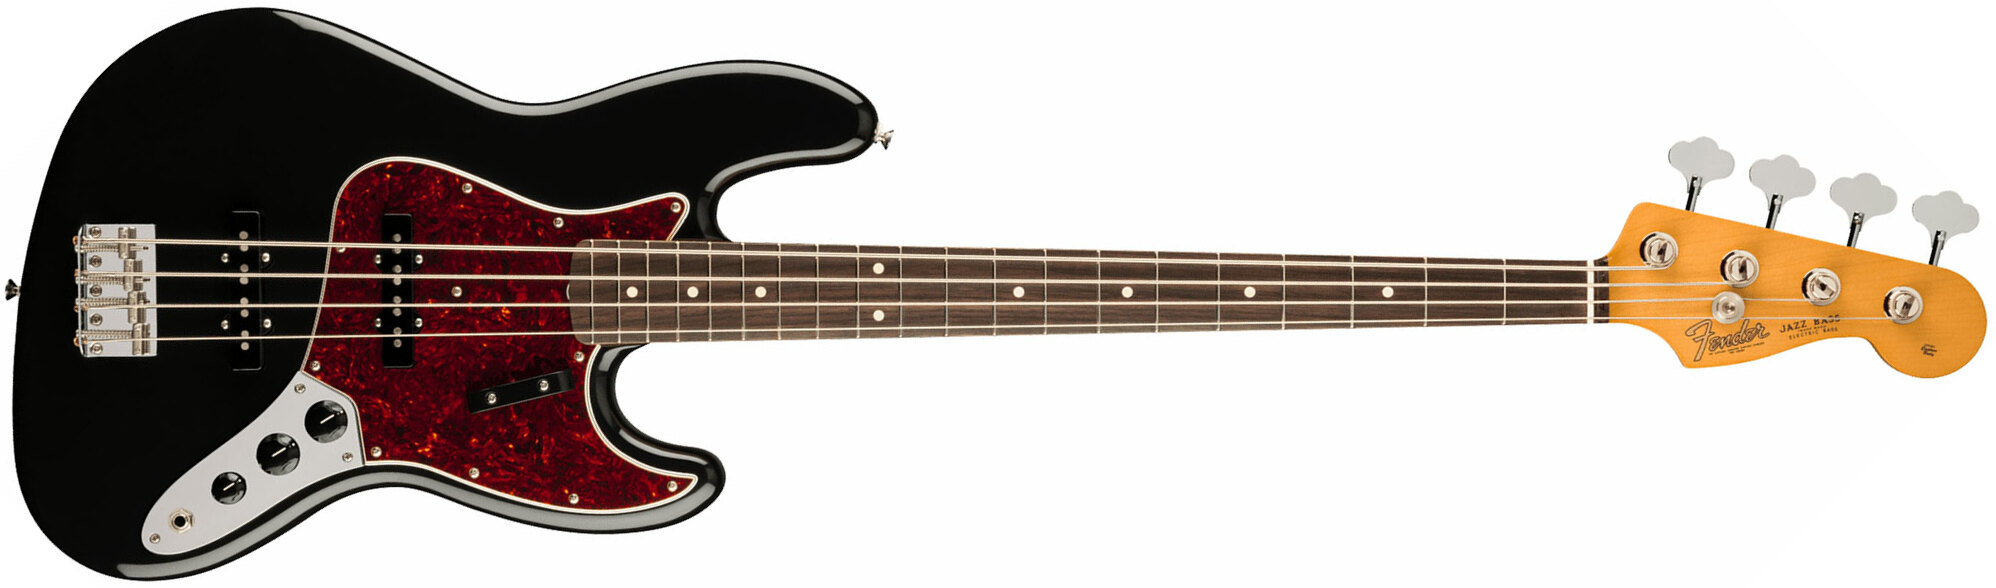 Fender Jazz Bass 60s Vintera Ii Mex Rw - Black - Bajo eléctrico de cuerpo sólido - Main picture